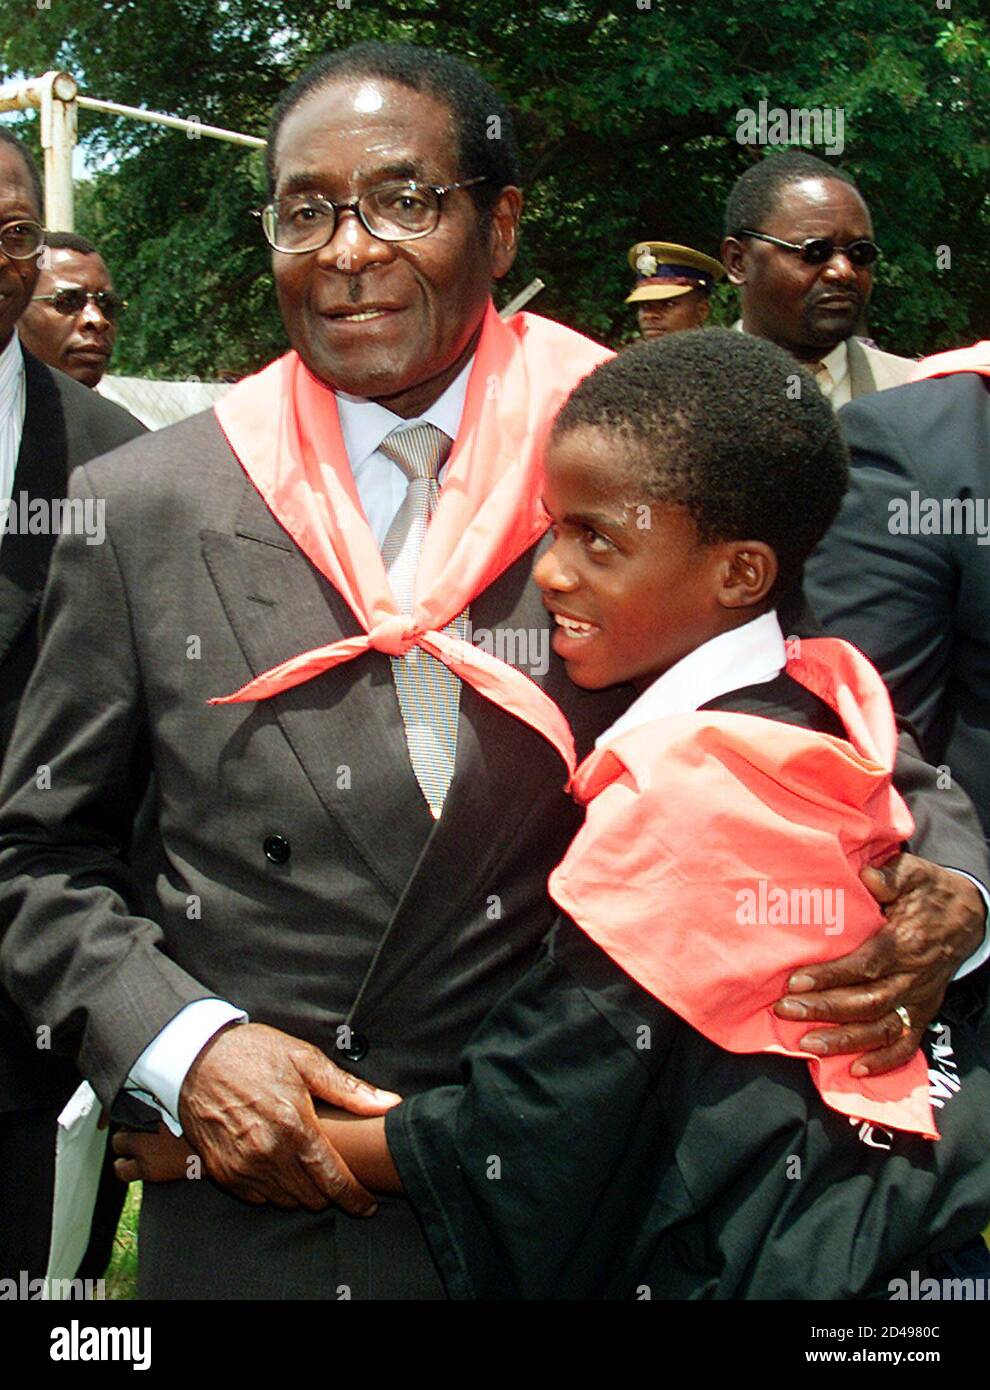 El presidente de Zimbabwe, Robert Mugabe, abraza a un joven miembro del Movimiento 21 de febrero en sus celebraciones oficiales celebradas por la juventud de Zimbabwe y el Movimiento 21 de febrero en la ciudad turística de Victoria Falls el 24 de febrero de 2001. Mugabe, que tenía 77 años el miércoles, prometió seguir adelante con su controvertido programa de reforma agraria, diciendo que era la única solución a la crisis económica del país. La bufanda roja es un símbolo del Movimiento del 21 de febrero. HB/AA Foto de stock